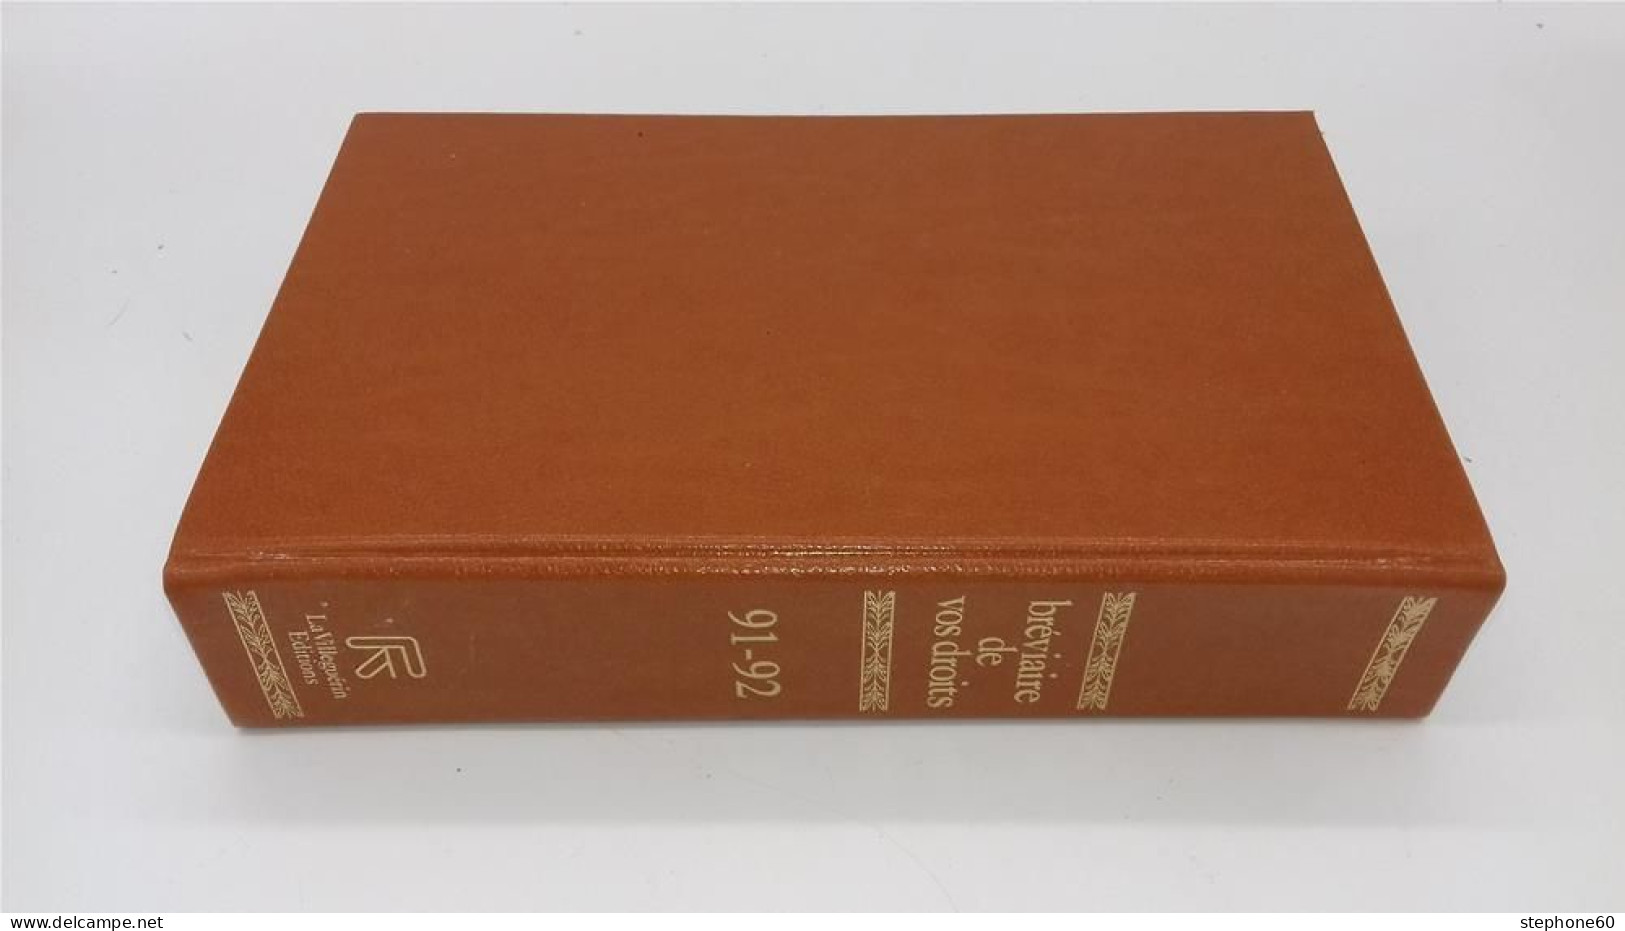 998 - (115) Breviaire De Vos Droits - Edition 1991 - 1992 - La Villeguerin Editions - Recht